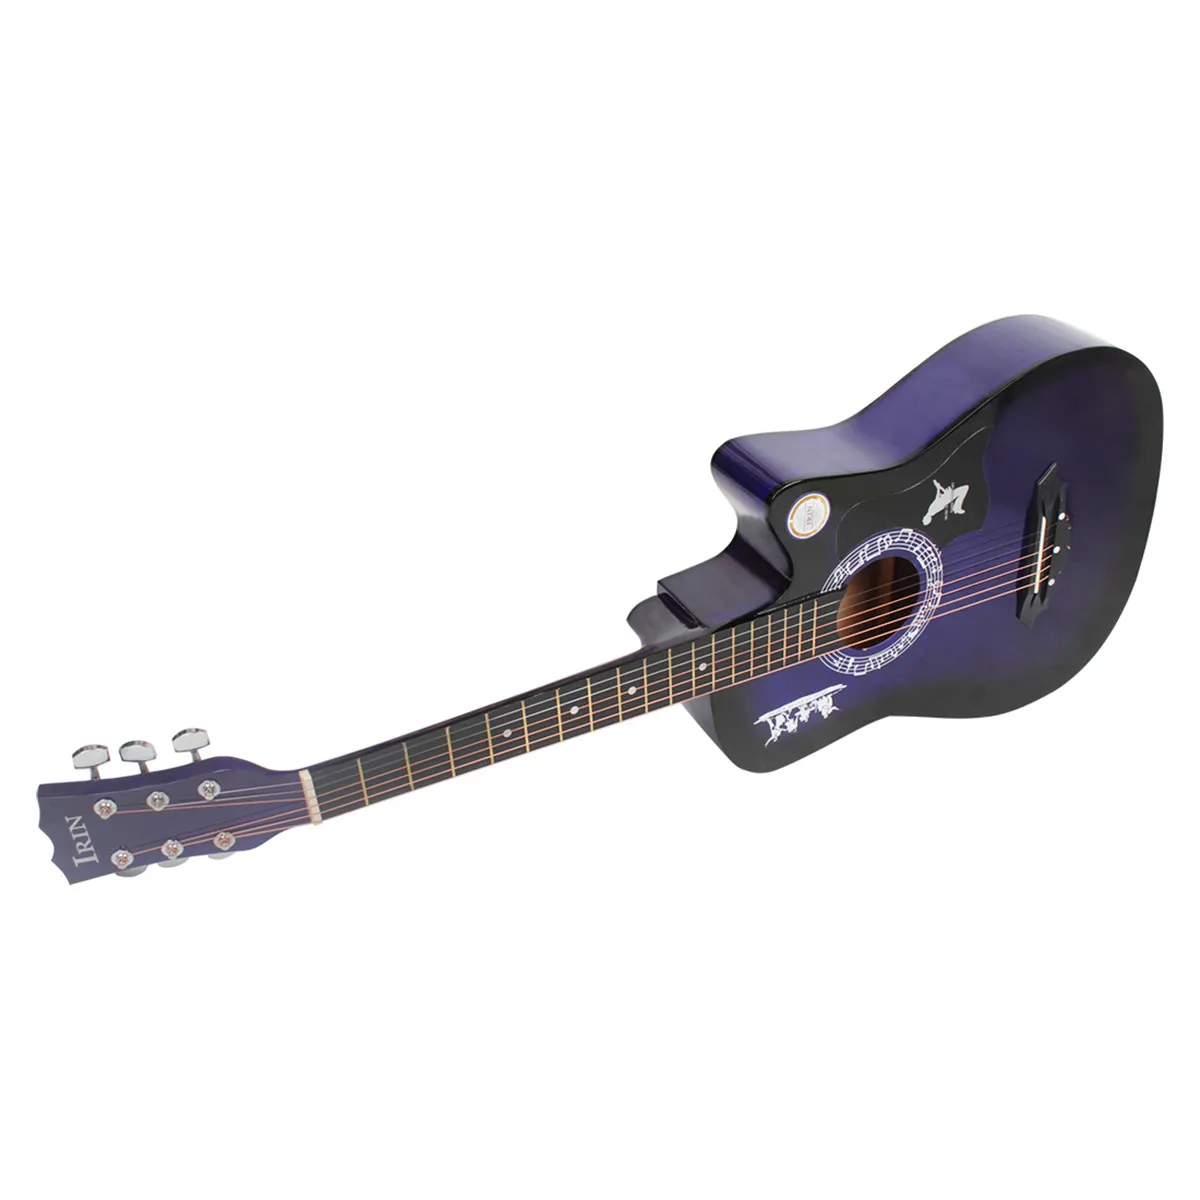 38 дюймов гитара акустическая народная гитара для начинающих 6 струн Липа с гитарным корпусом Stra тюнер палочки стальные струны - Цвет: Сливовый